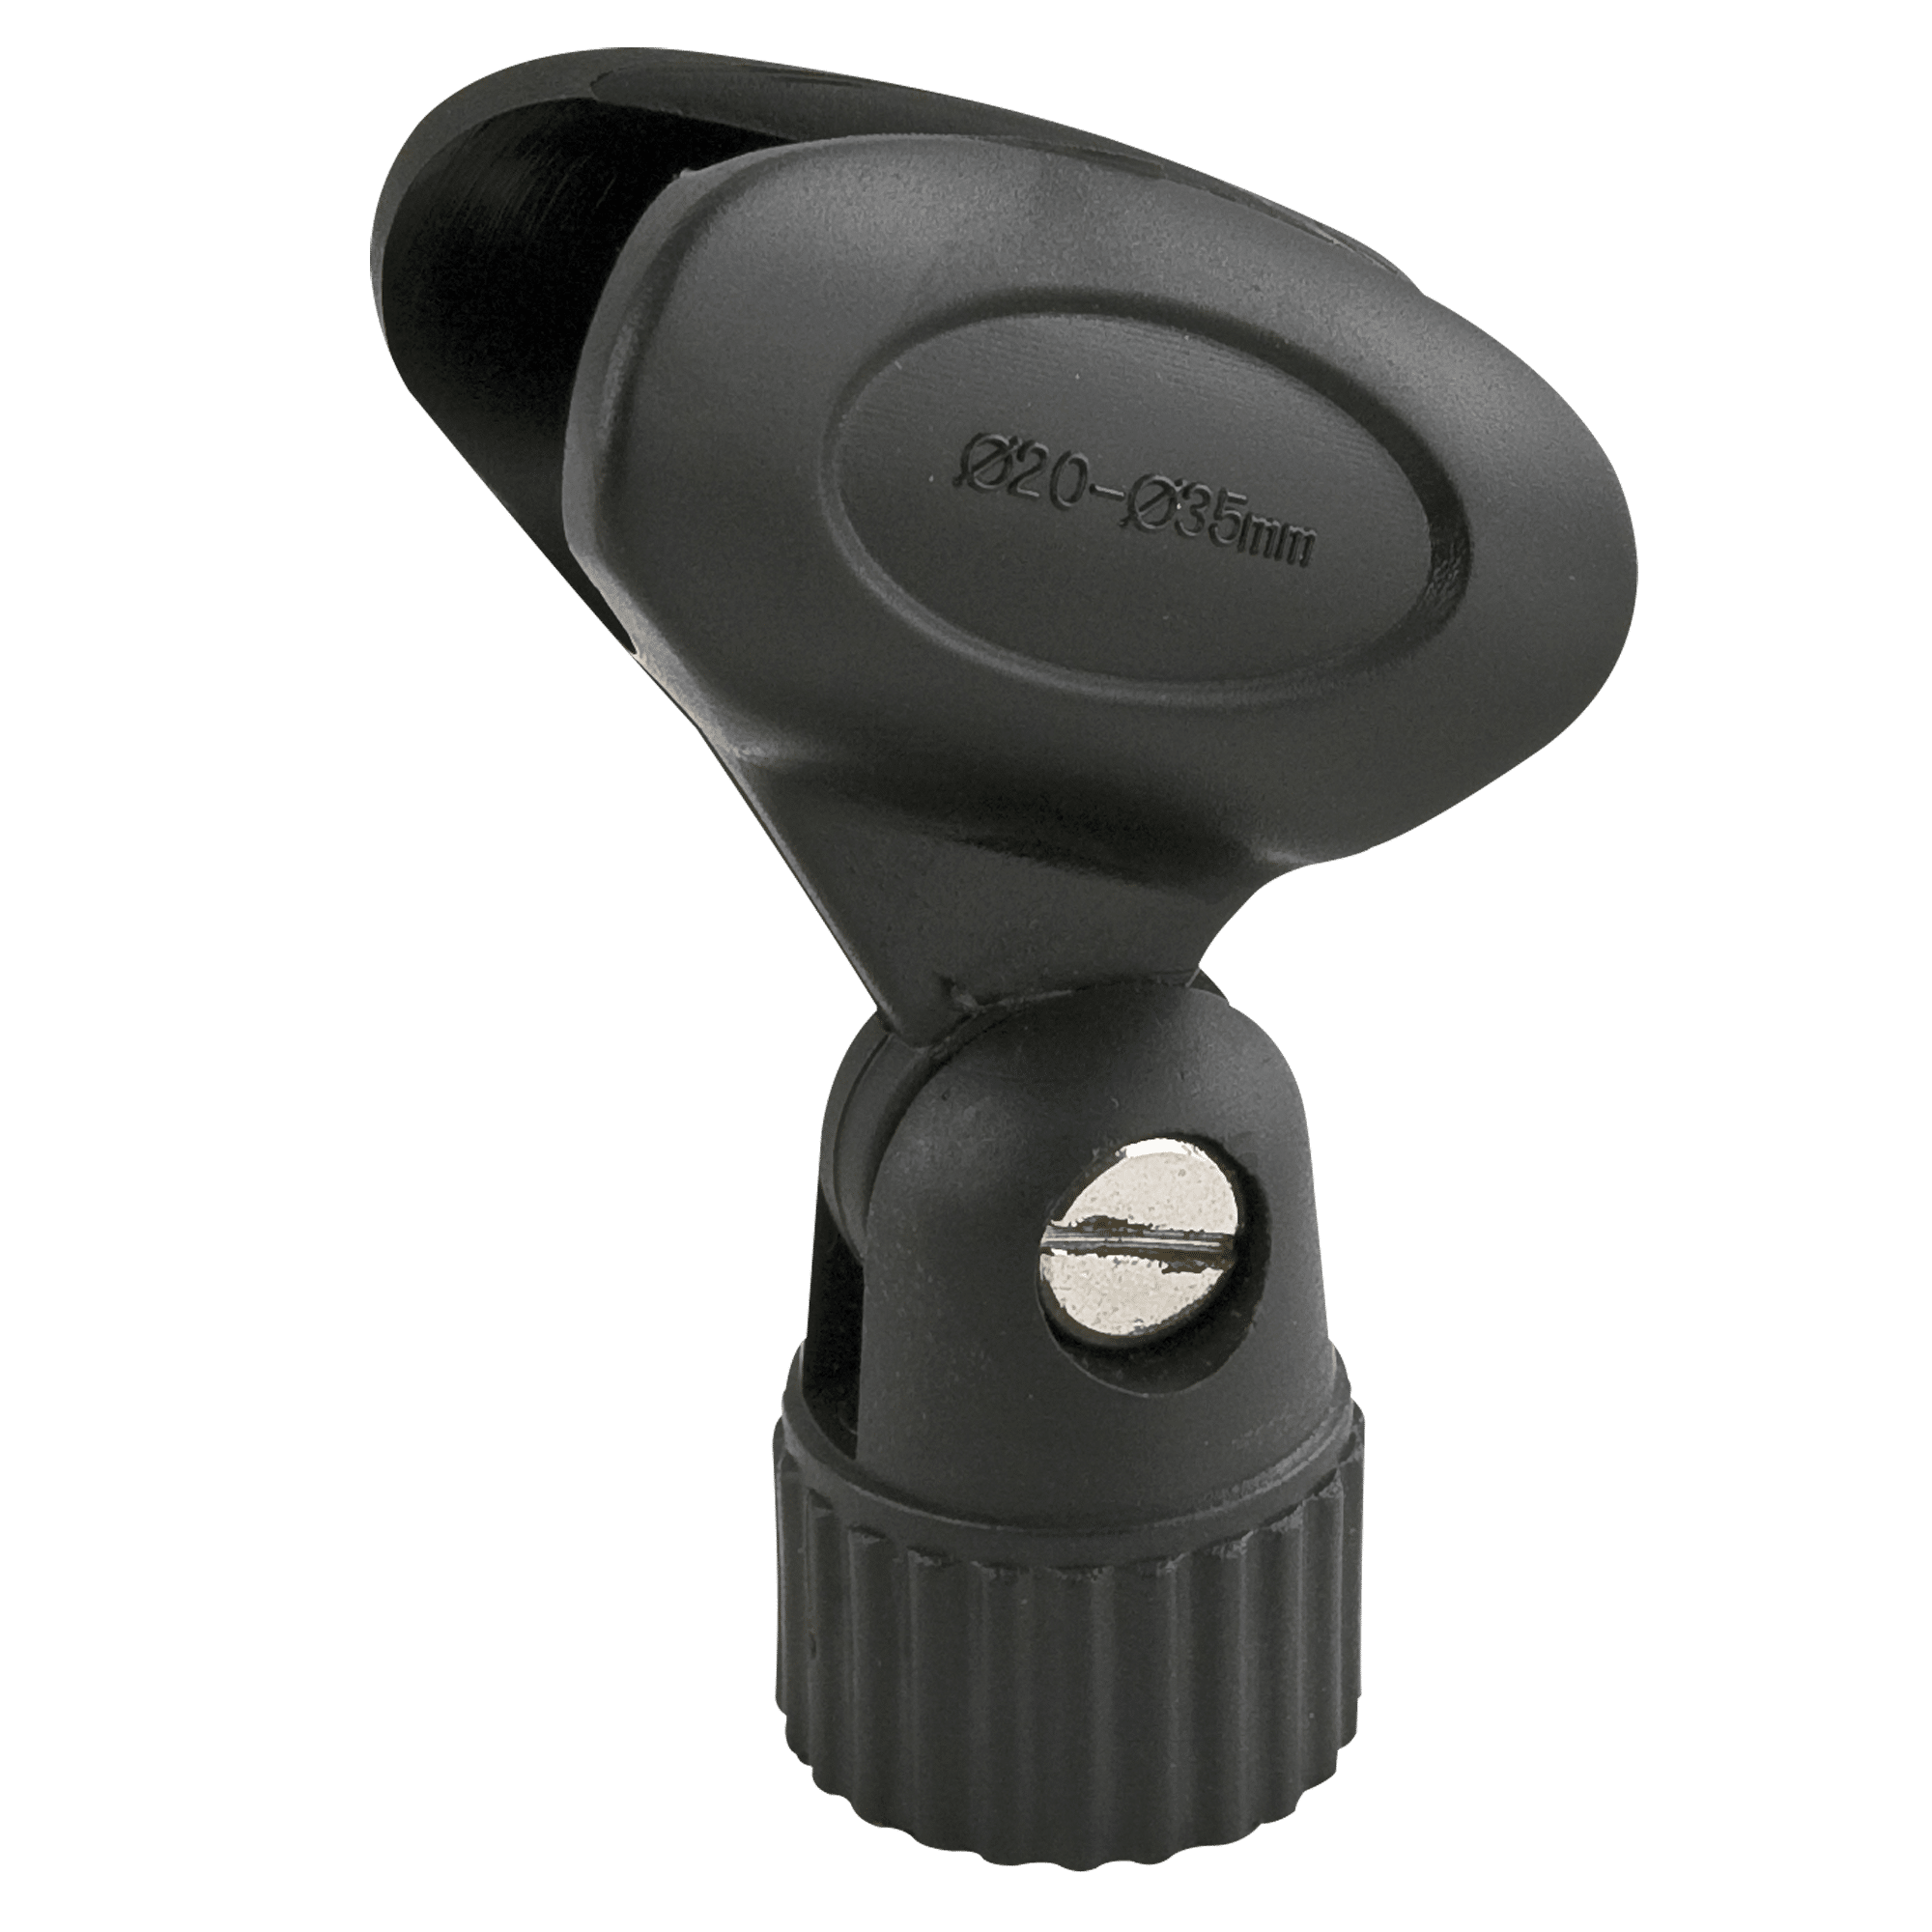 Microphone Holder 22 mm - Onlinediscowinkel.nl